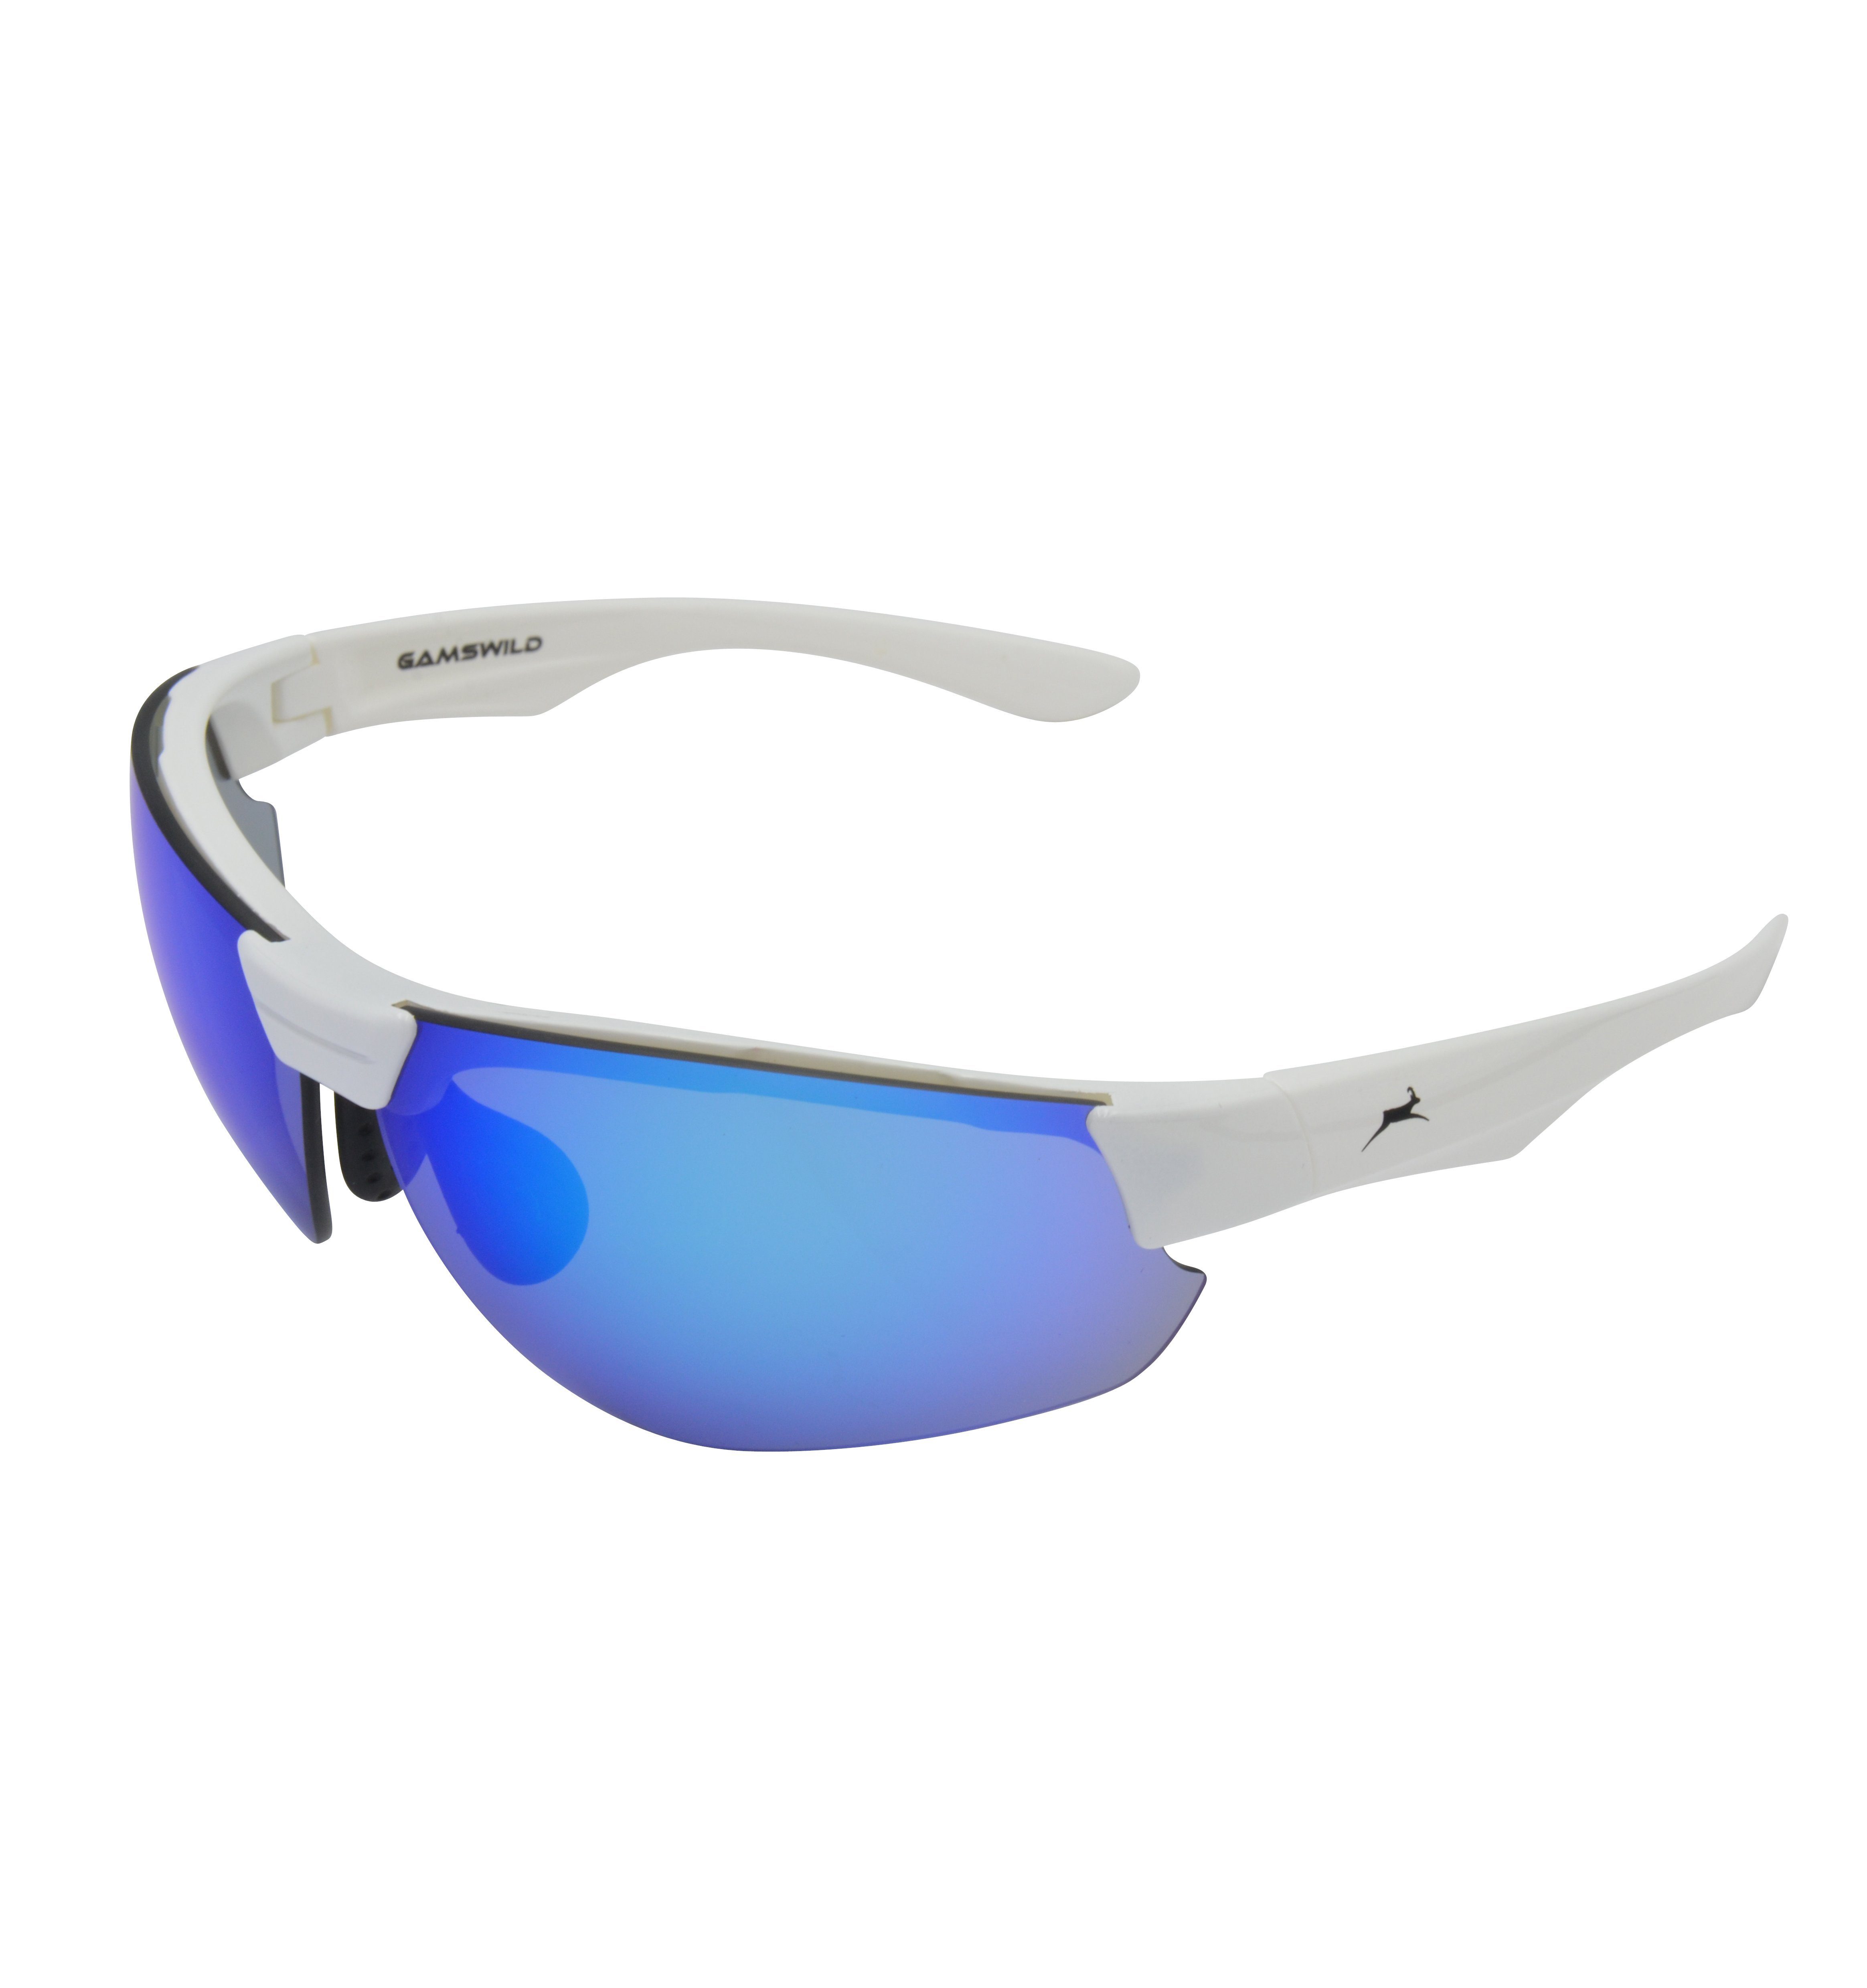 Damen Fahrradbrille WS3032 Herren Skibrille Sportbrille weiß, blau, grün, Gamswild Halbrahmenbrille Unisex, Sonnenbrille